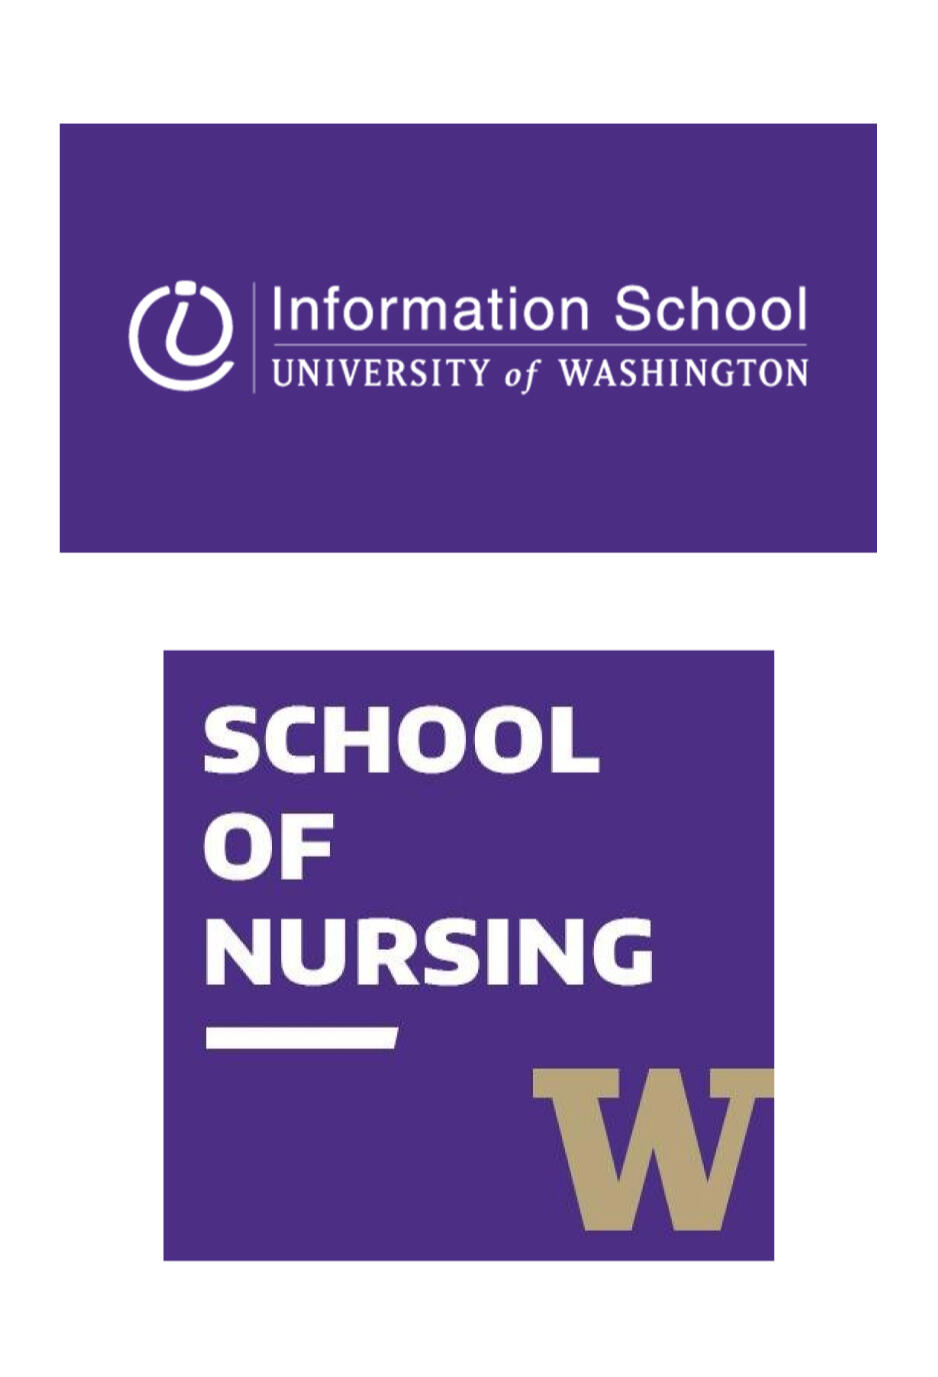 UW Information School and UW School of Nursing logos